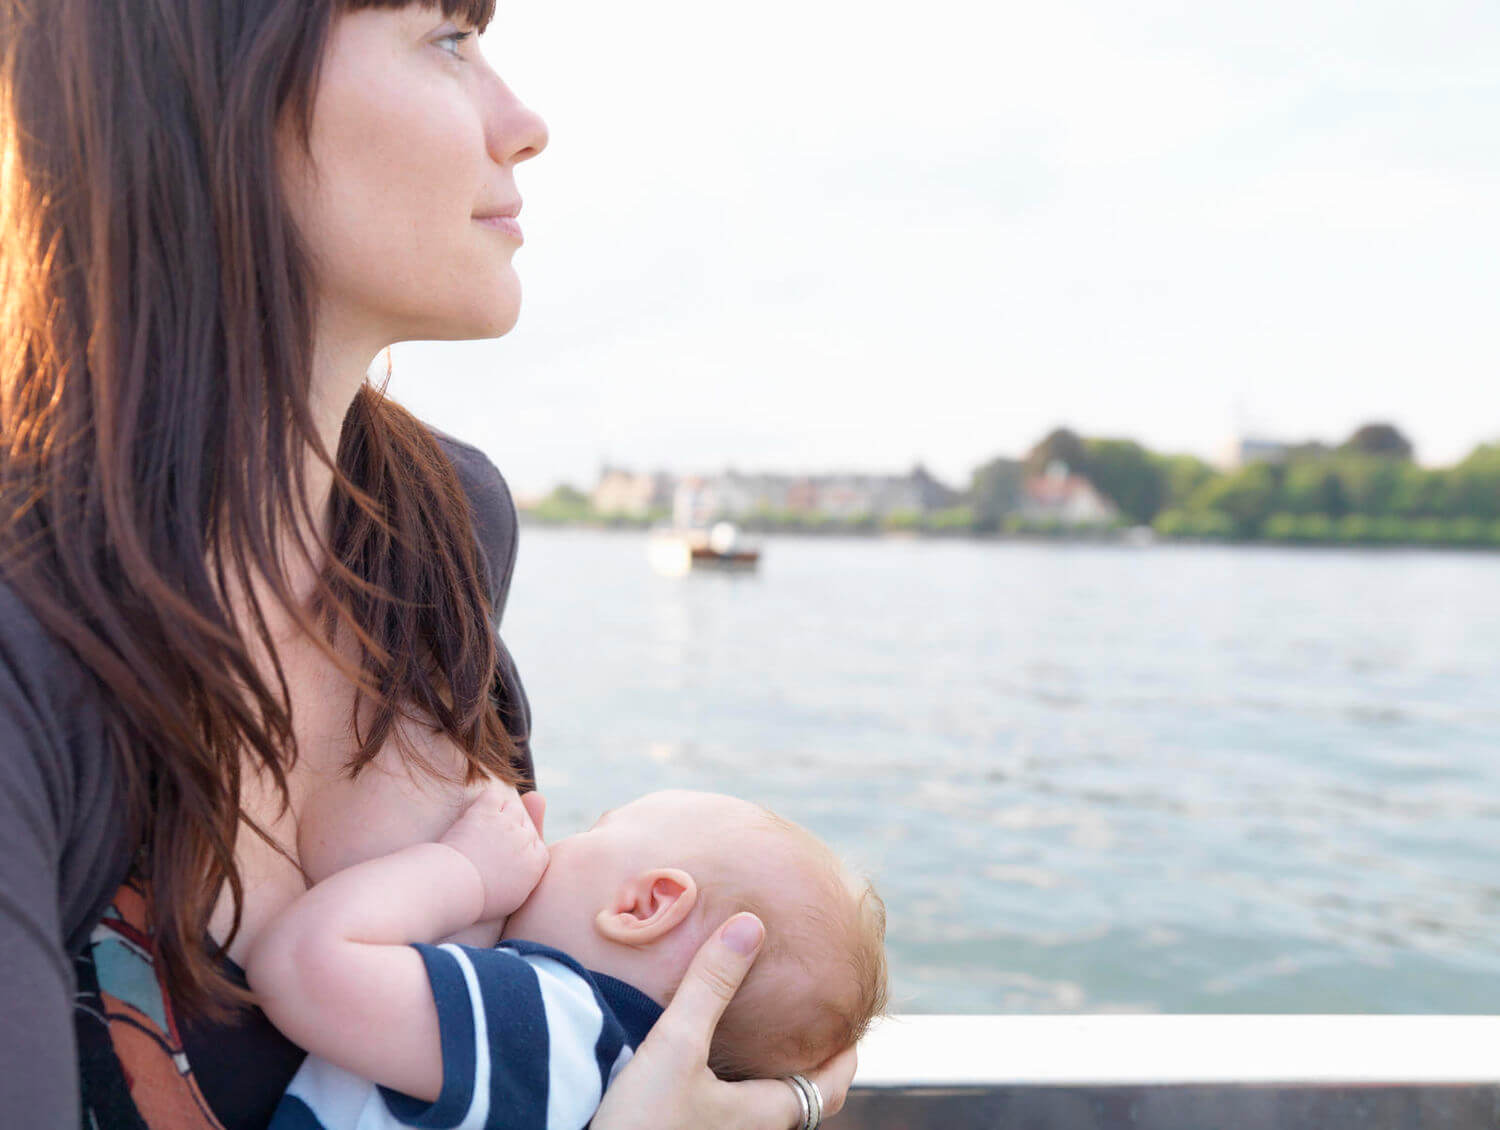 Fotos de lactancia materna en redes sociales: ¿sí o no?